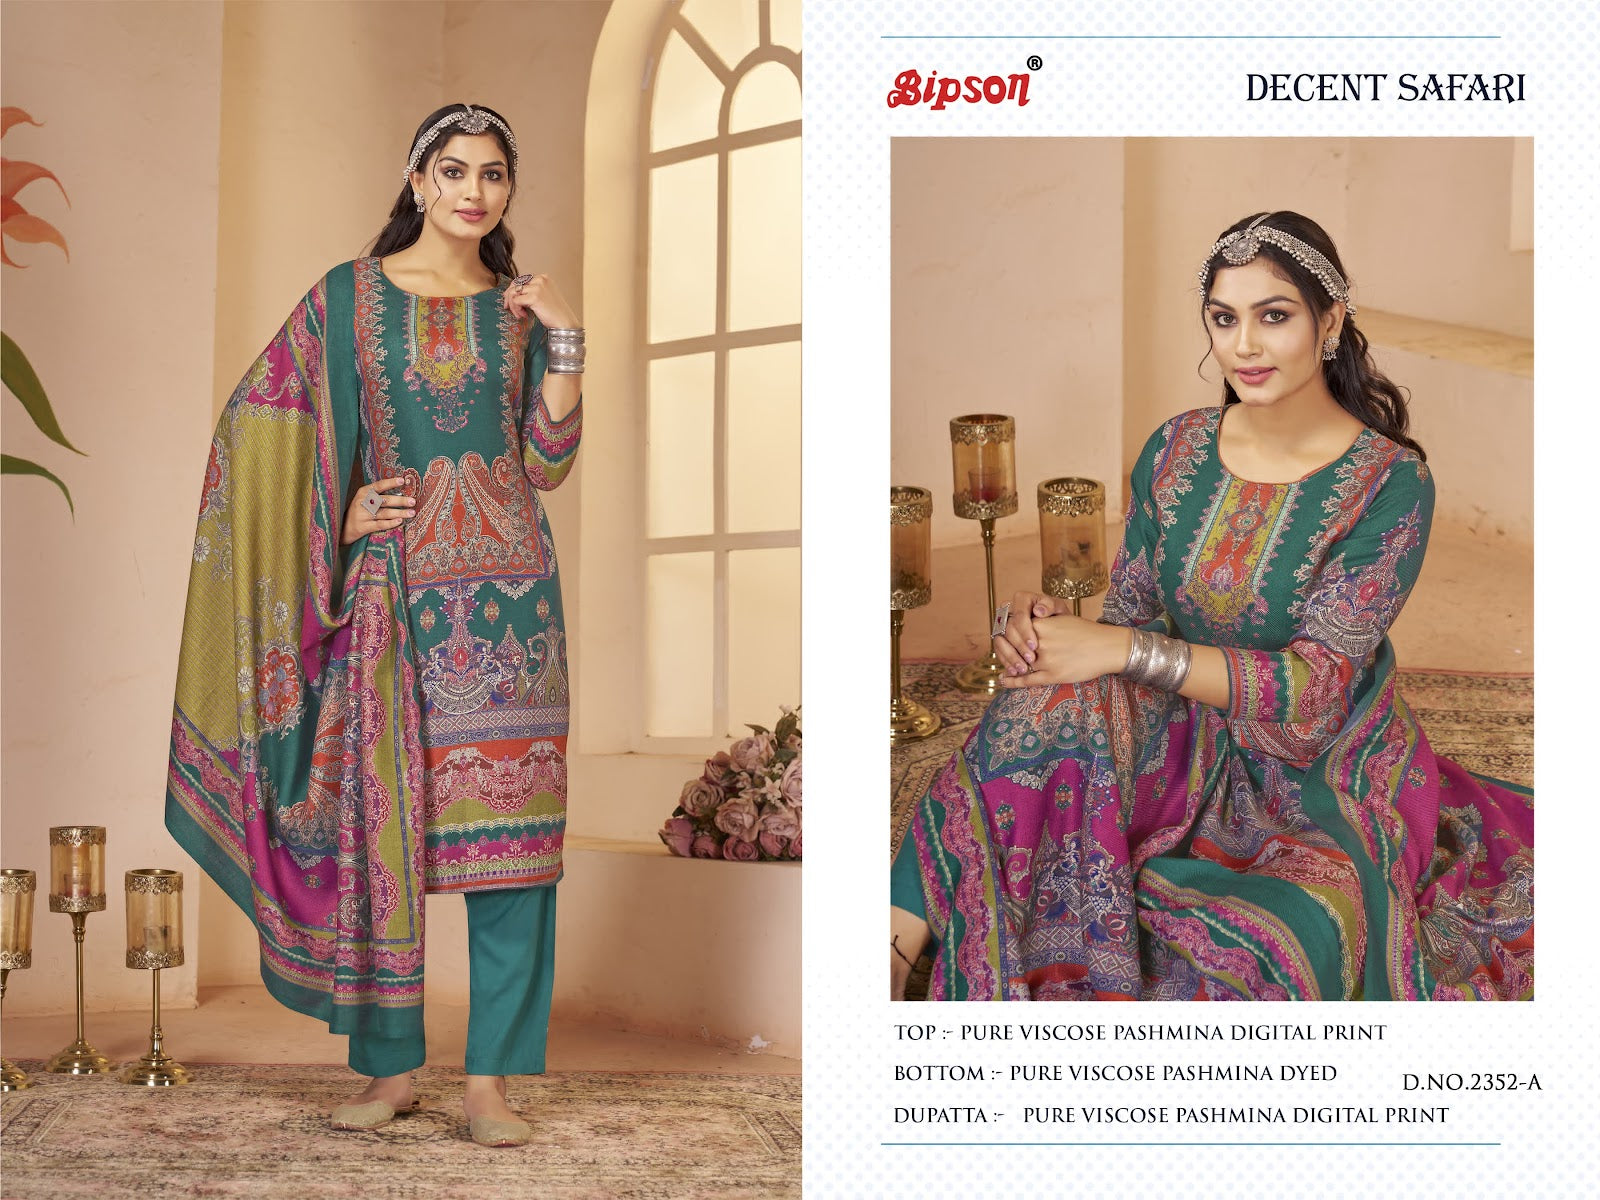 Decent Safari 2352 Bipson Prints Pashmina Suits